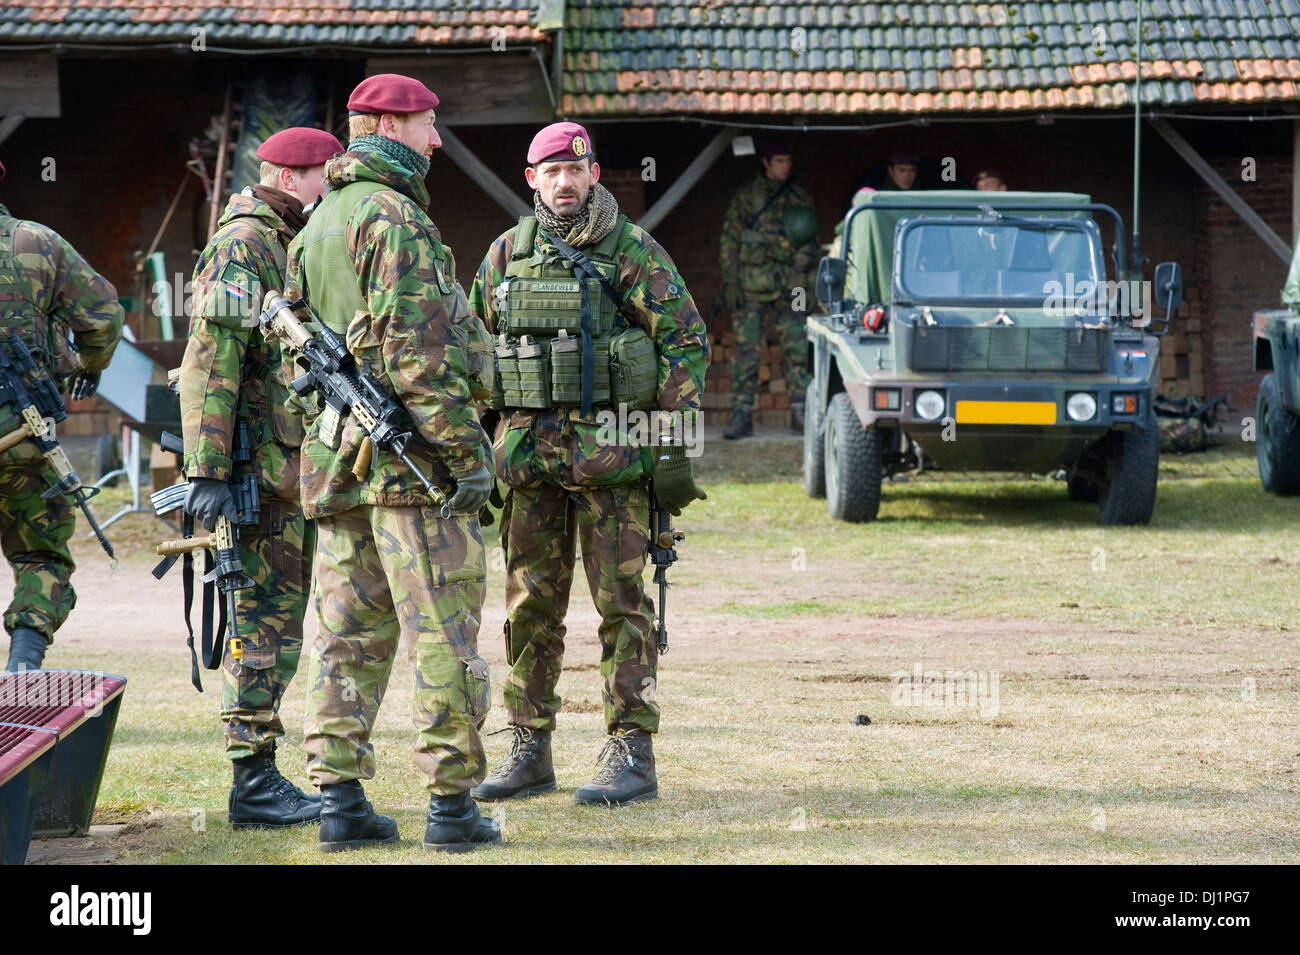 Offiziere der holländischen Special Forces diskutieren die Strategie während eines Trainings der niederländischen Armee an einem kalten Tag Stockfoto